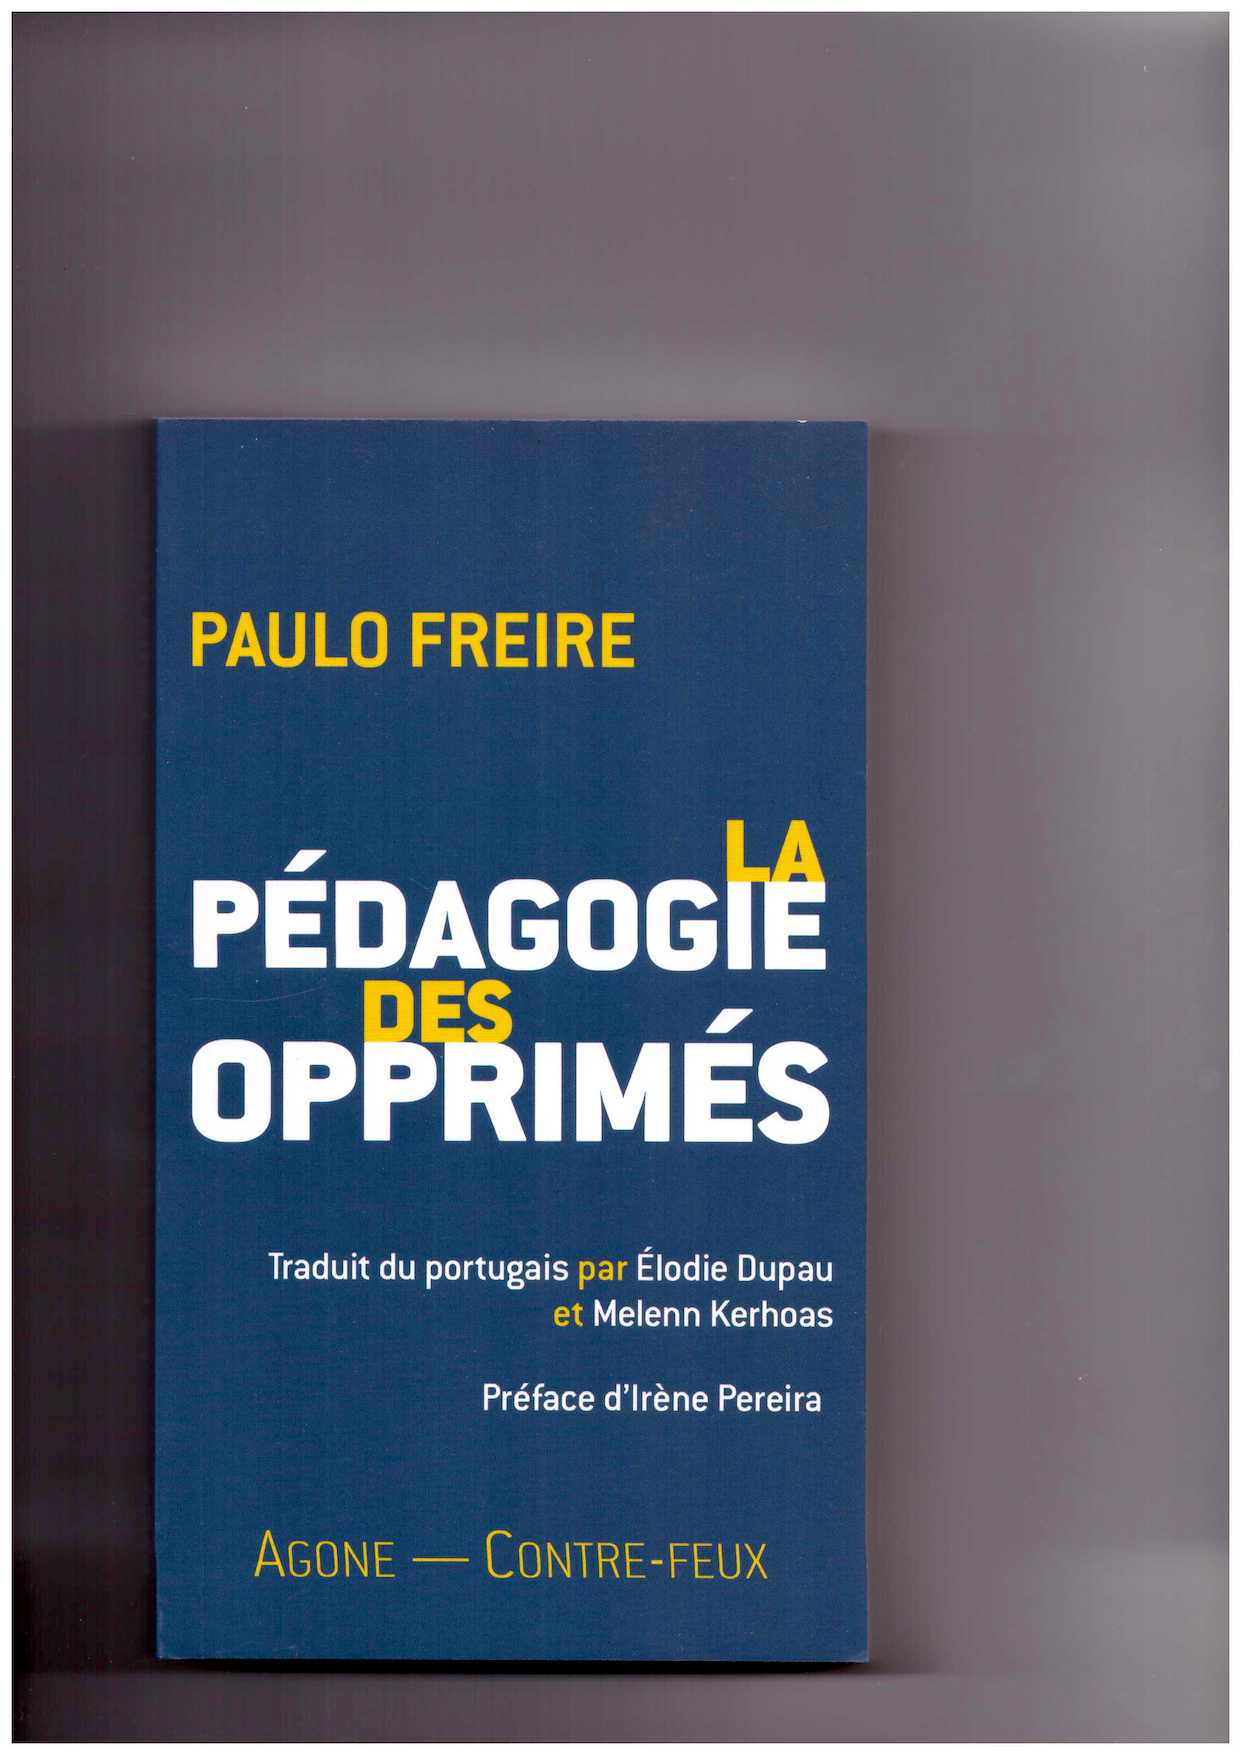 FREIRE, Paulo - La Pédagogie des opprimés